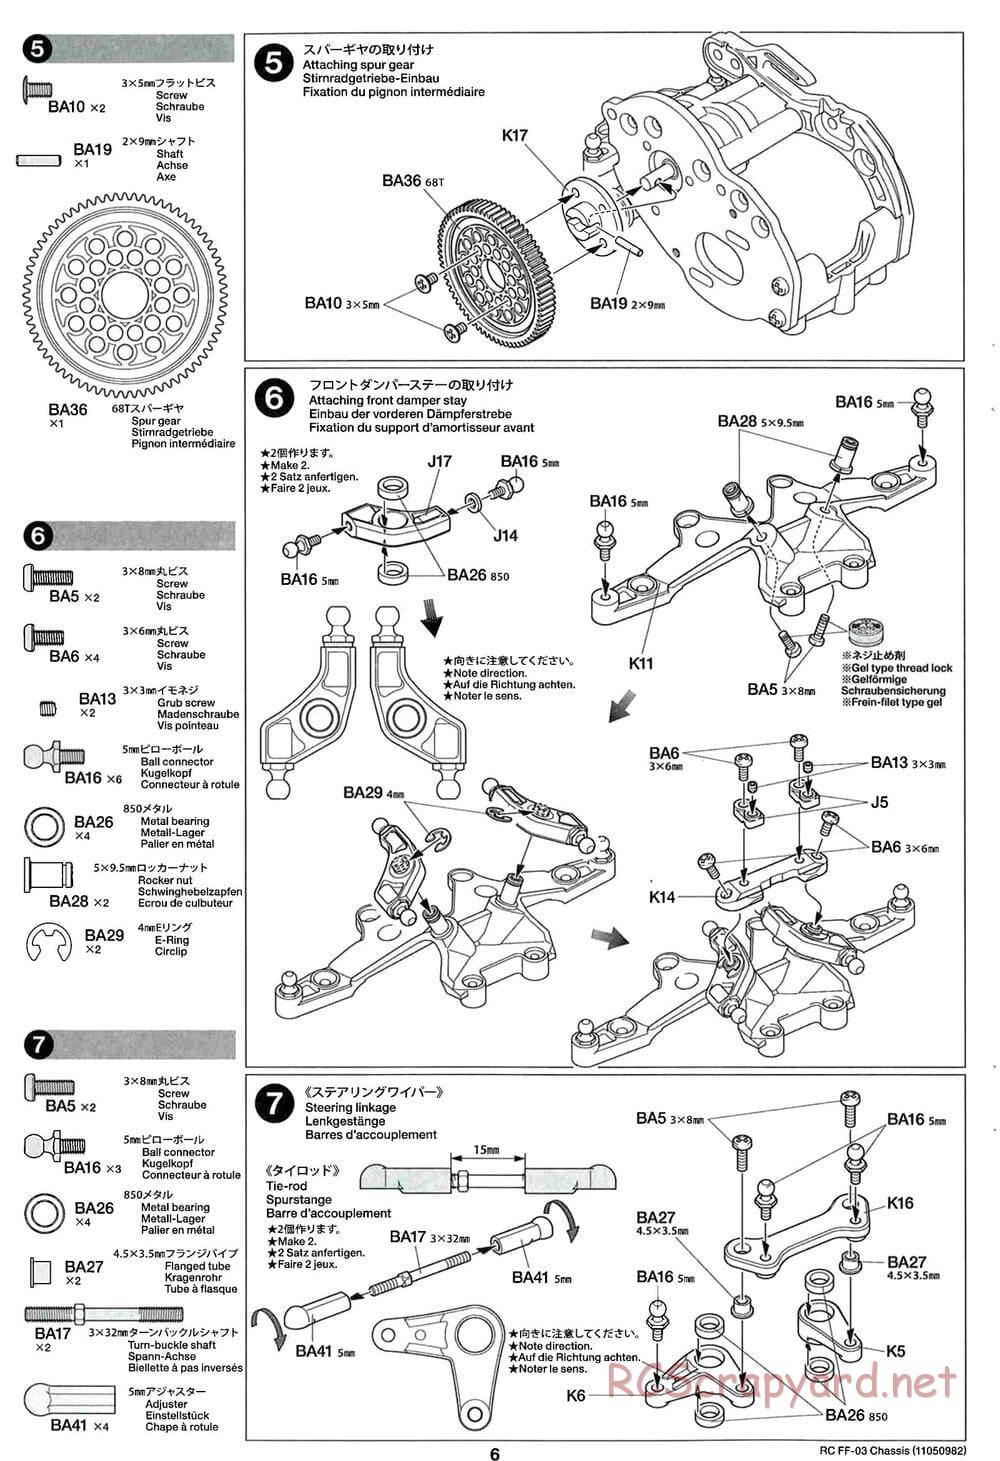 Tamiya - Honda CR-Z - FF-03 Chassis - Manual - Page 6